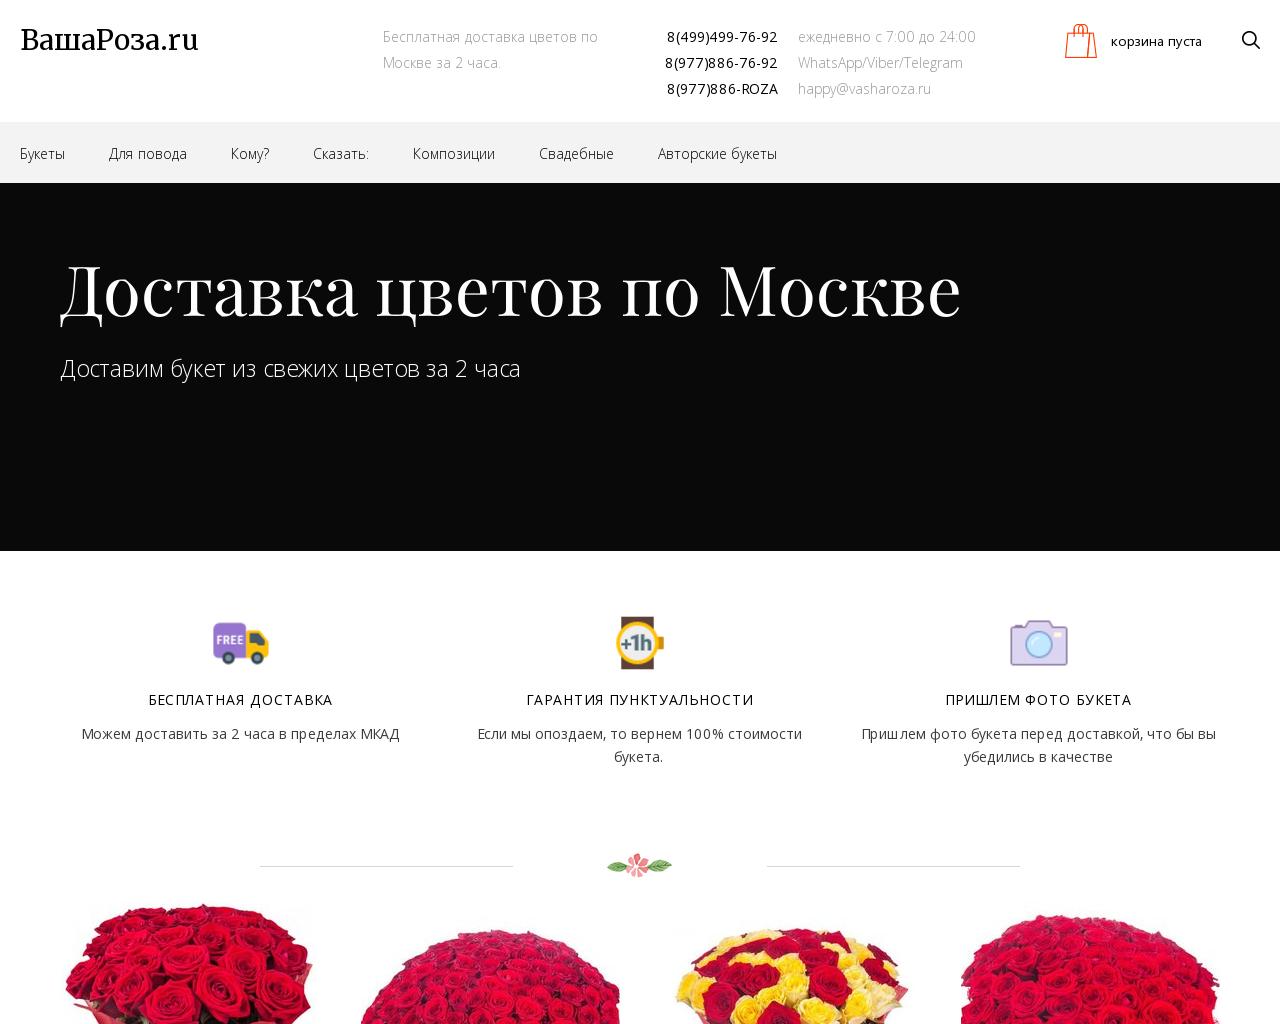 Изображение сайта vasharoza.ru в разрешении 1280x1024